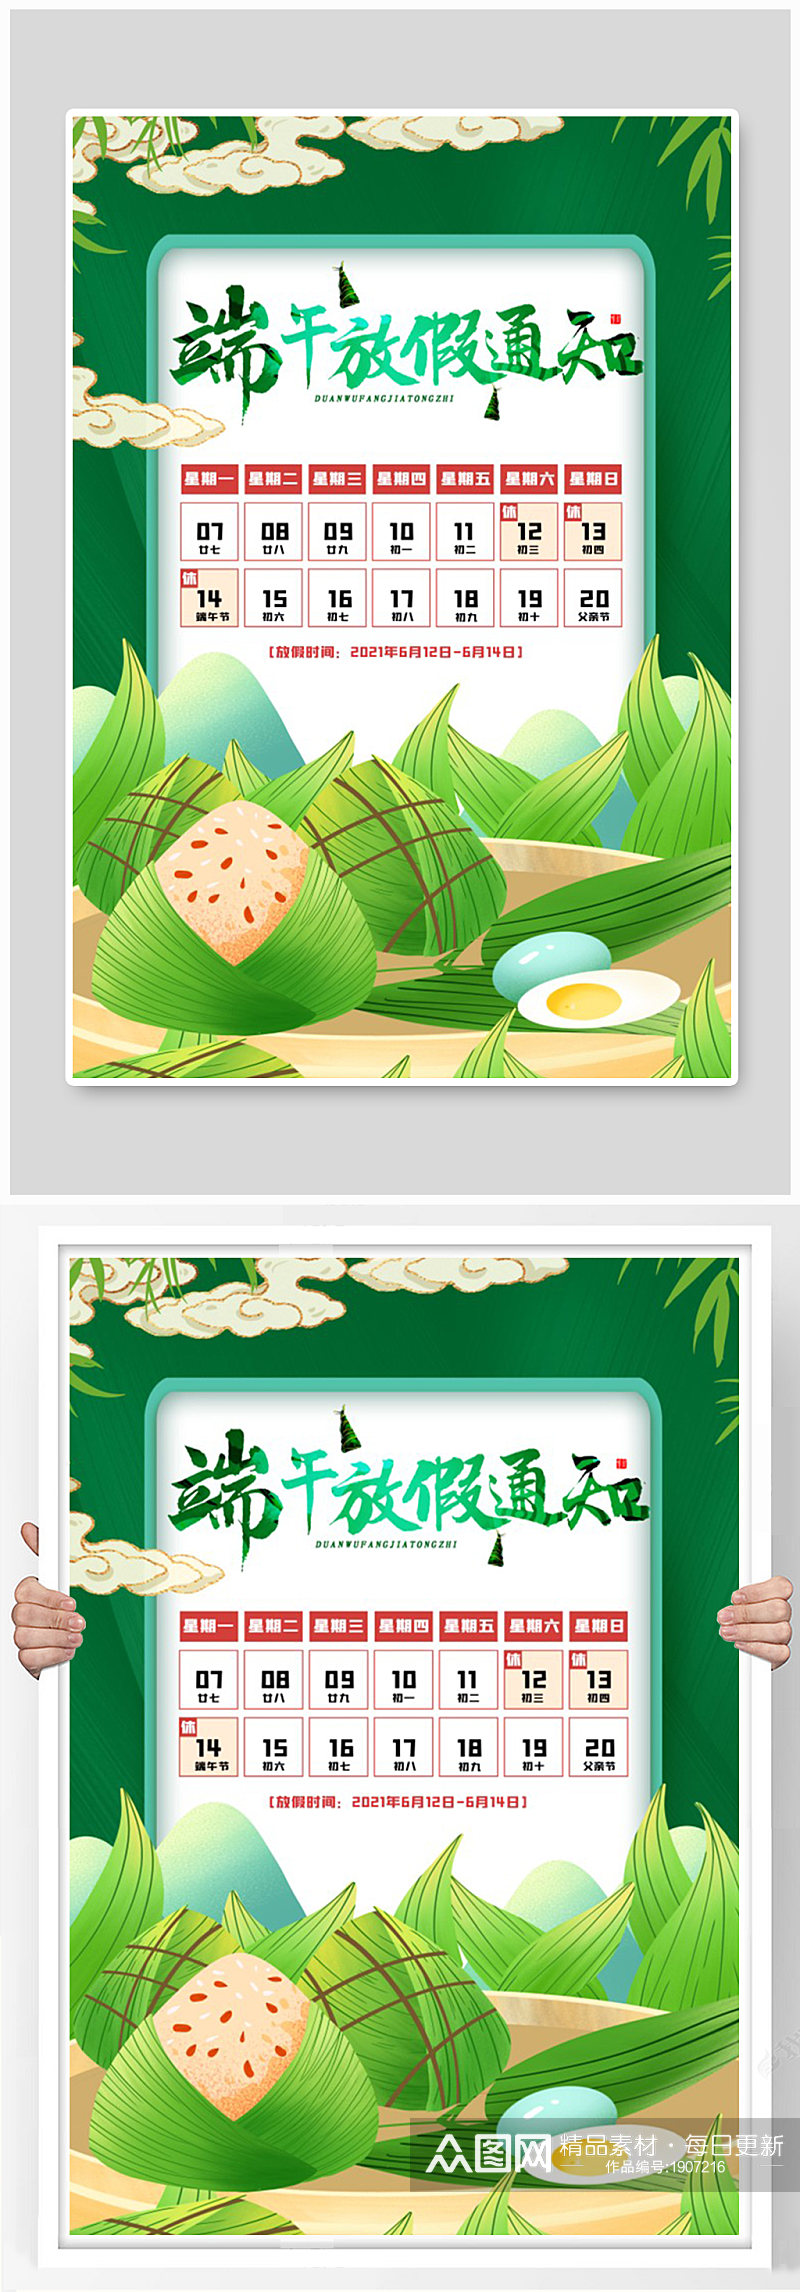 简约中国传统节日端午节放假通知海报素材